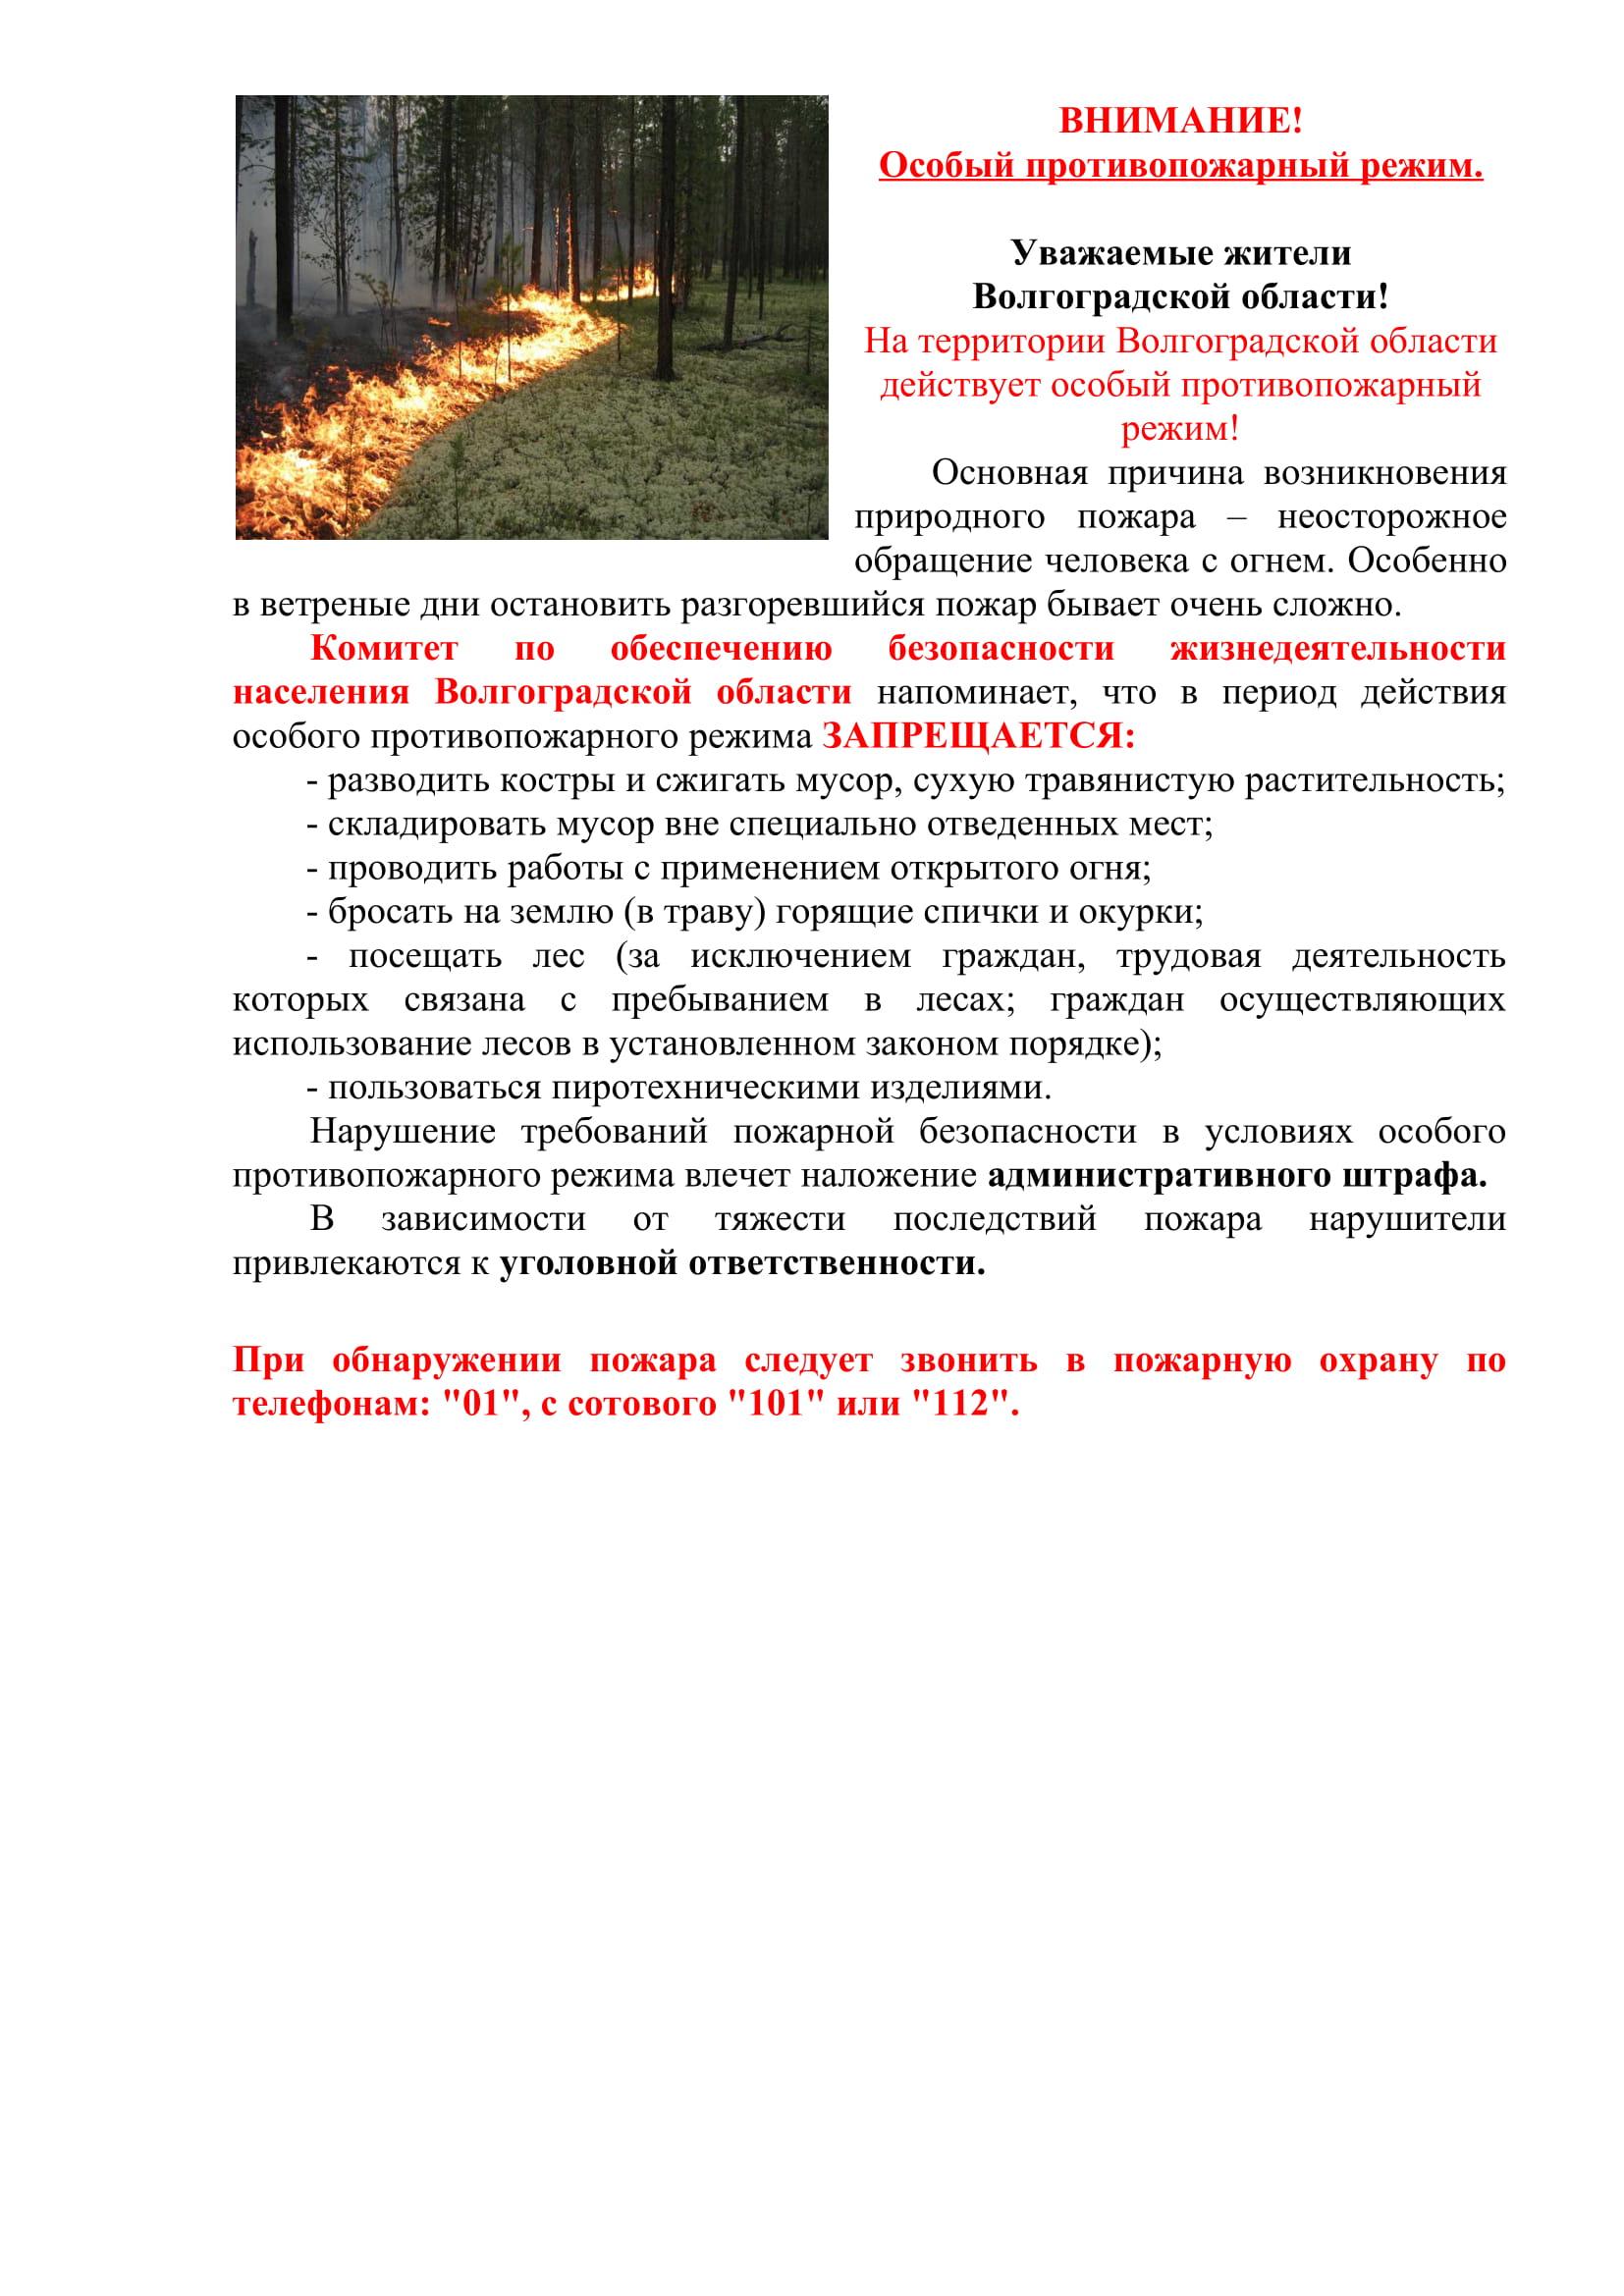 Памятка Особый противопожарный режим в г. Волгограде.jpg